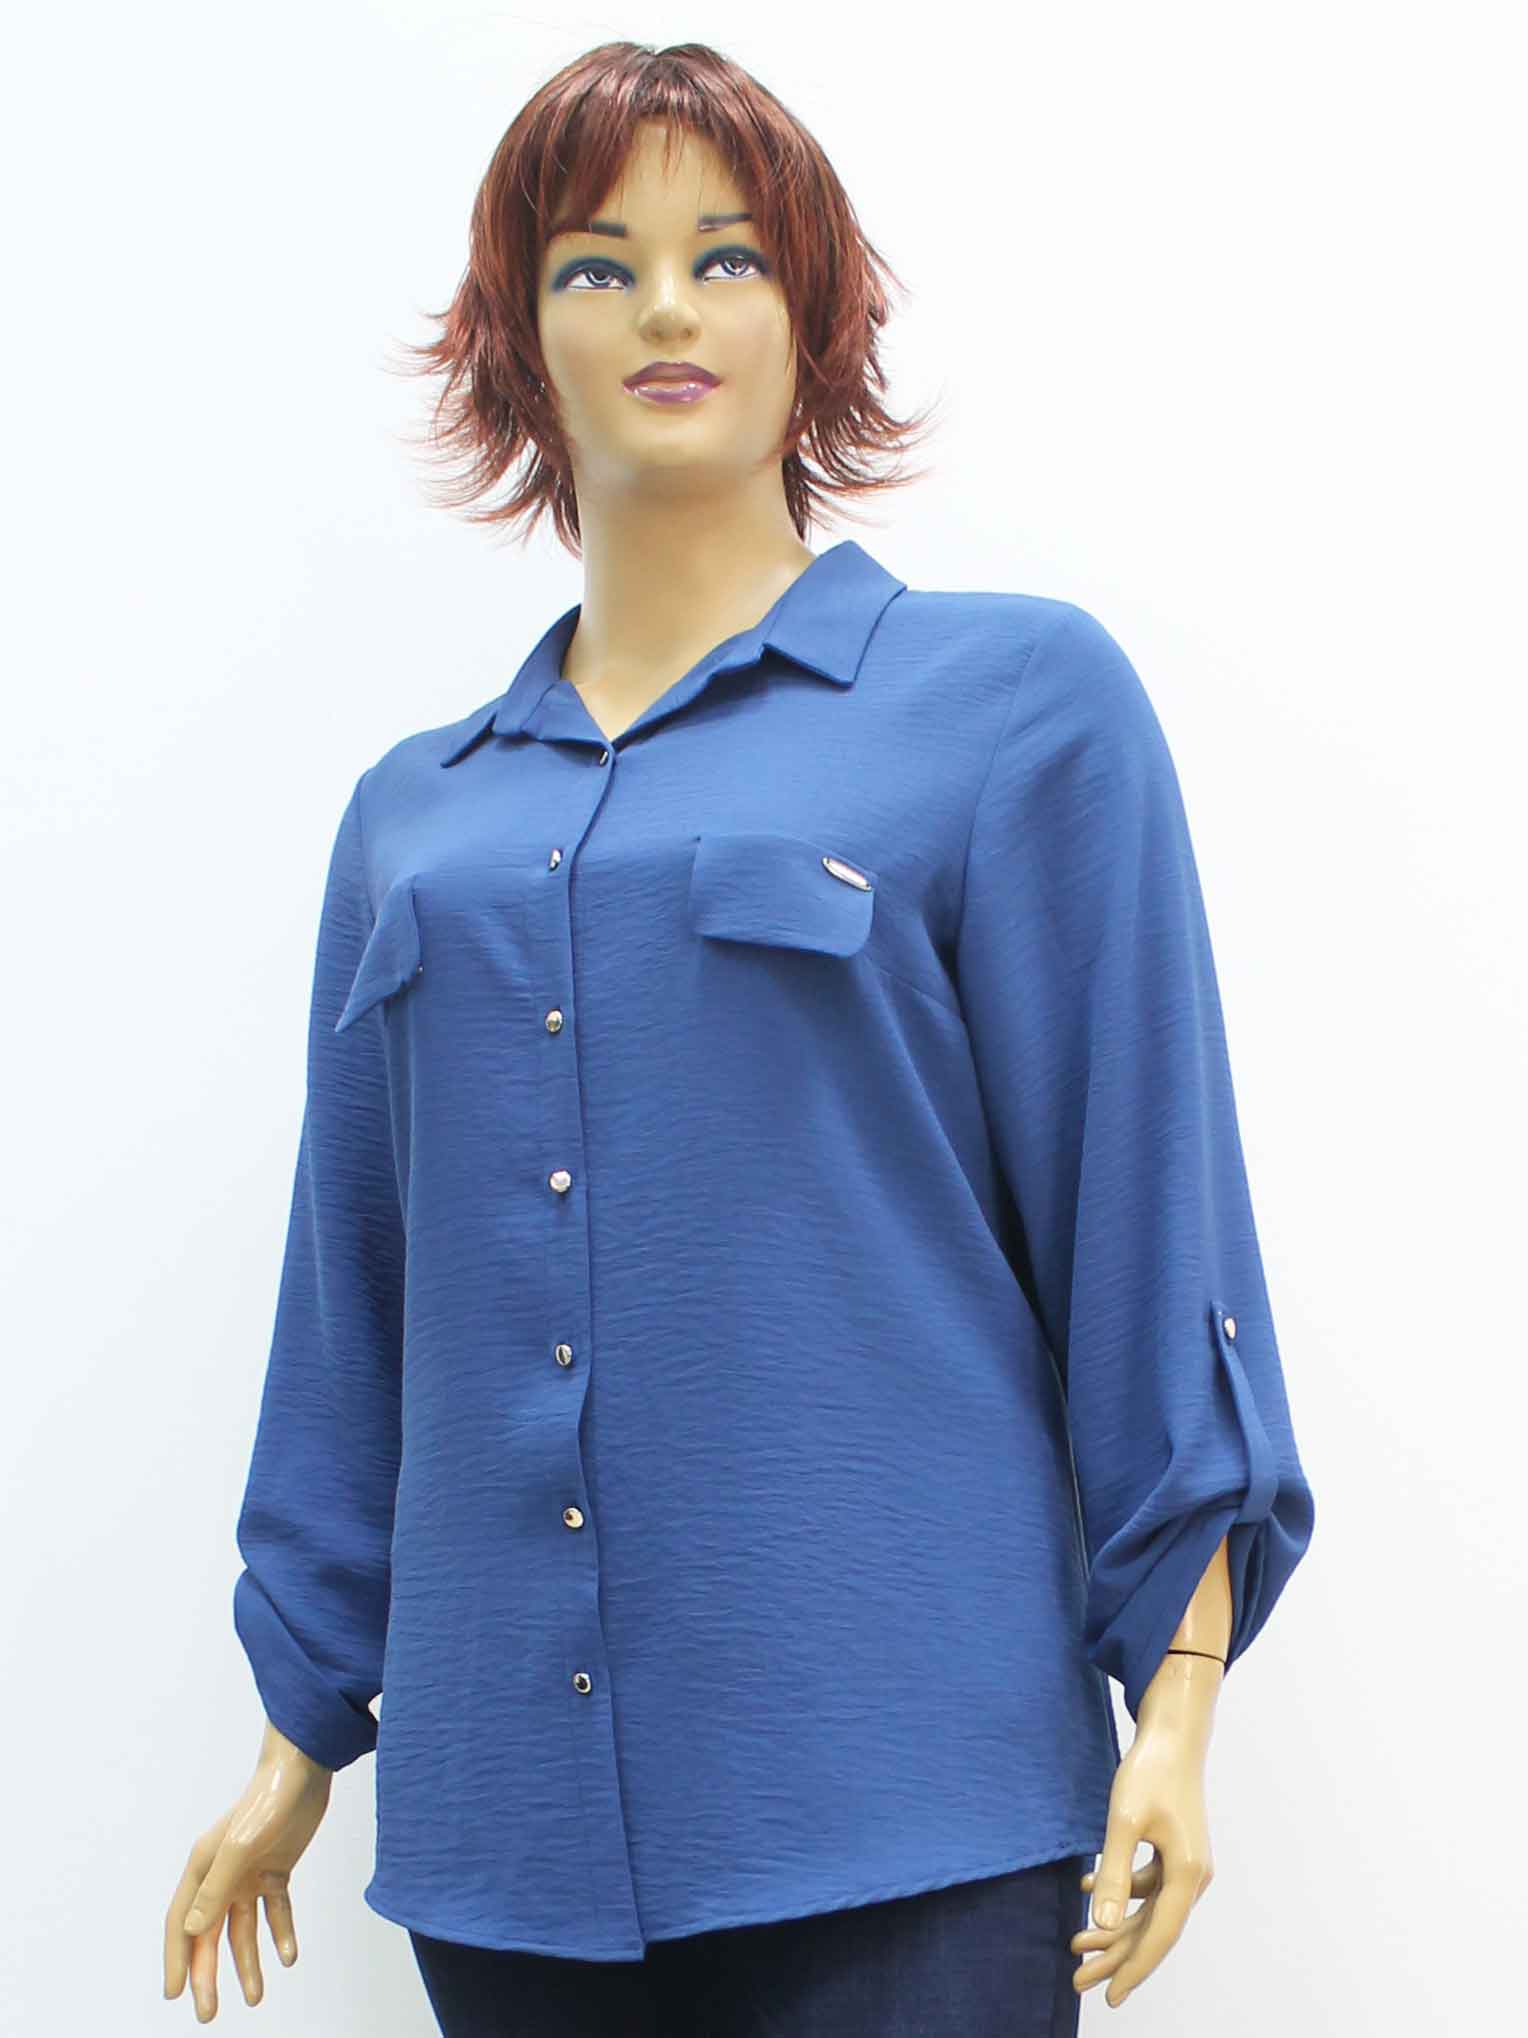 Сорочка (рубашка) женская из жатой ткани большого размера. Магазин «Пышная Дама», Луганск.